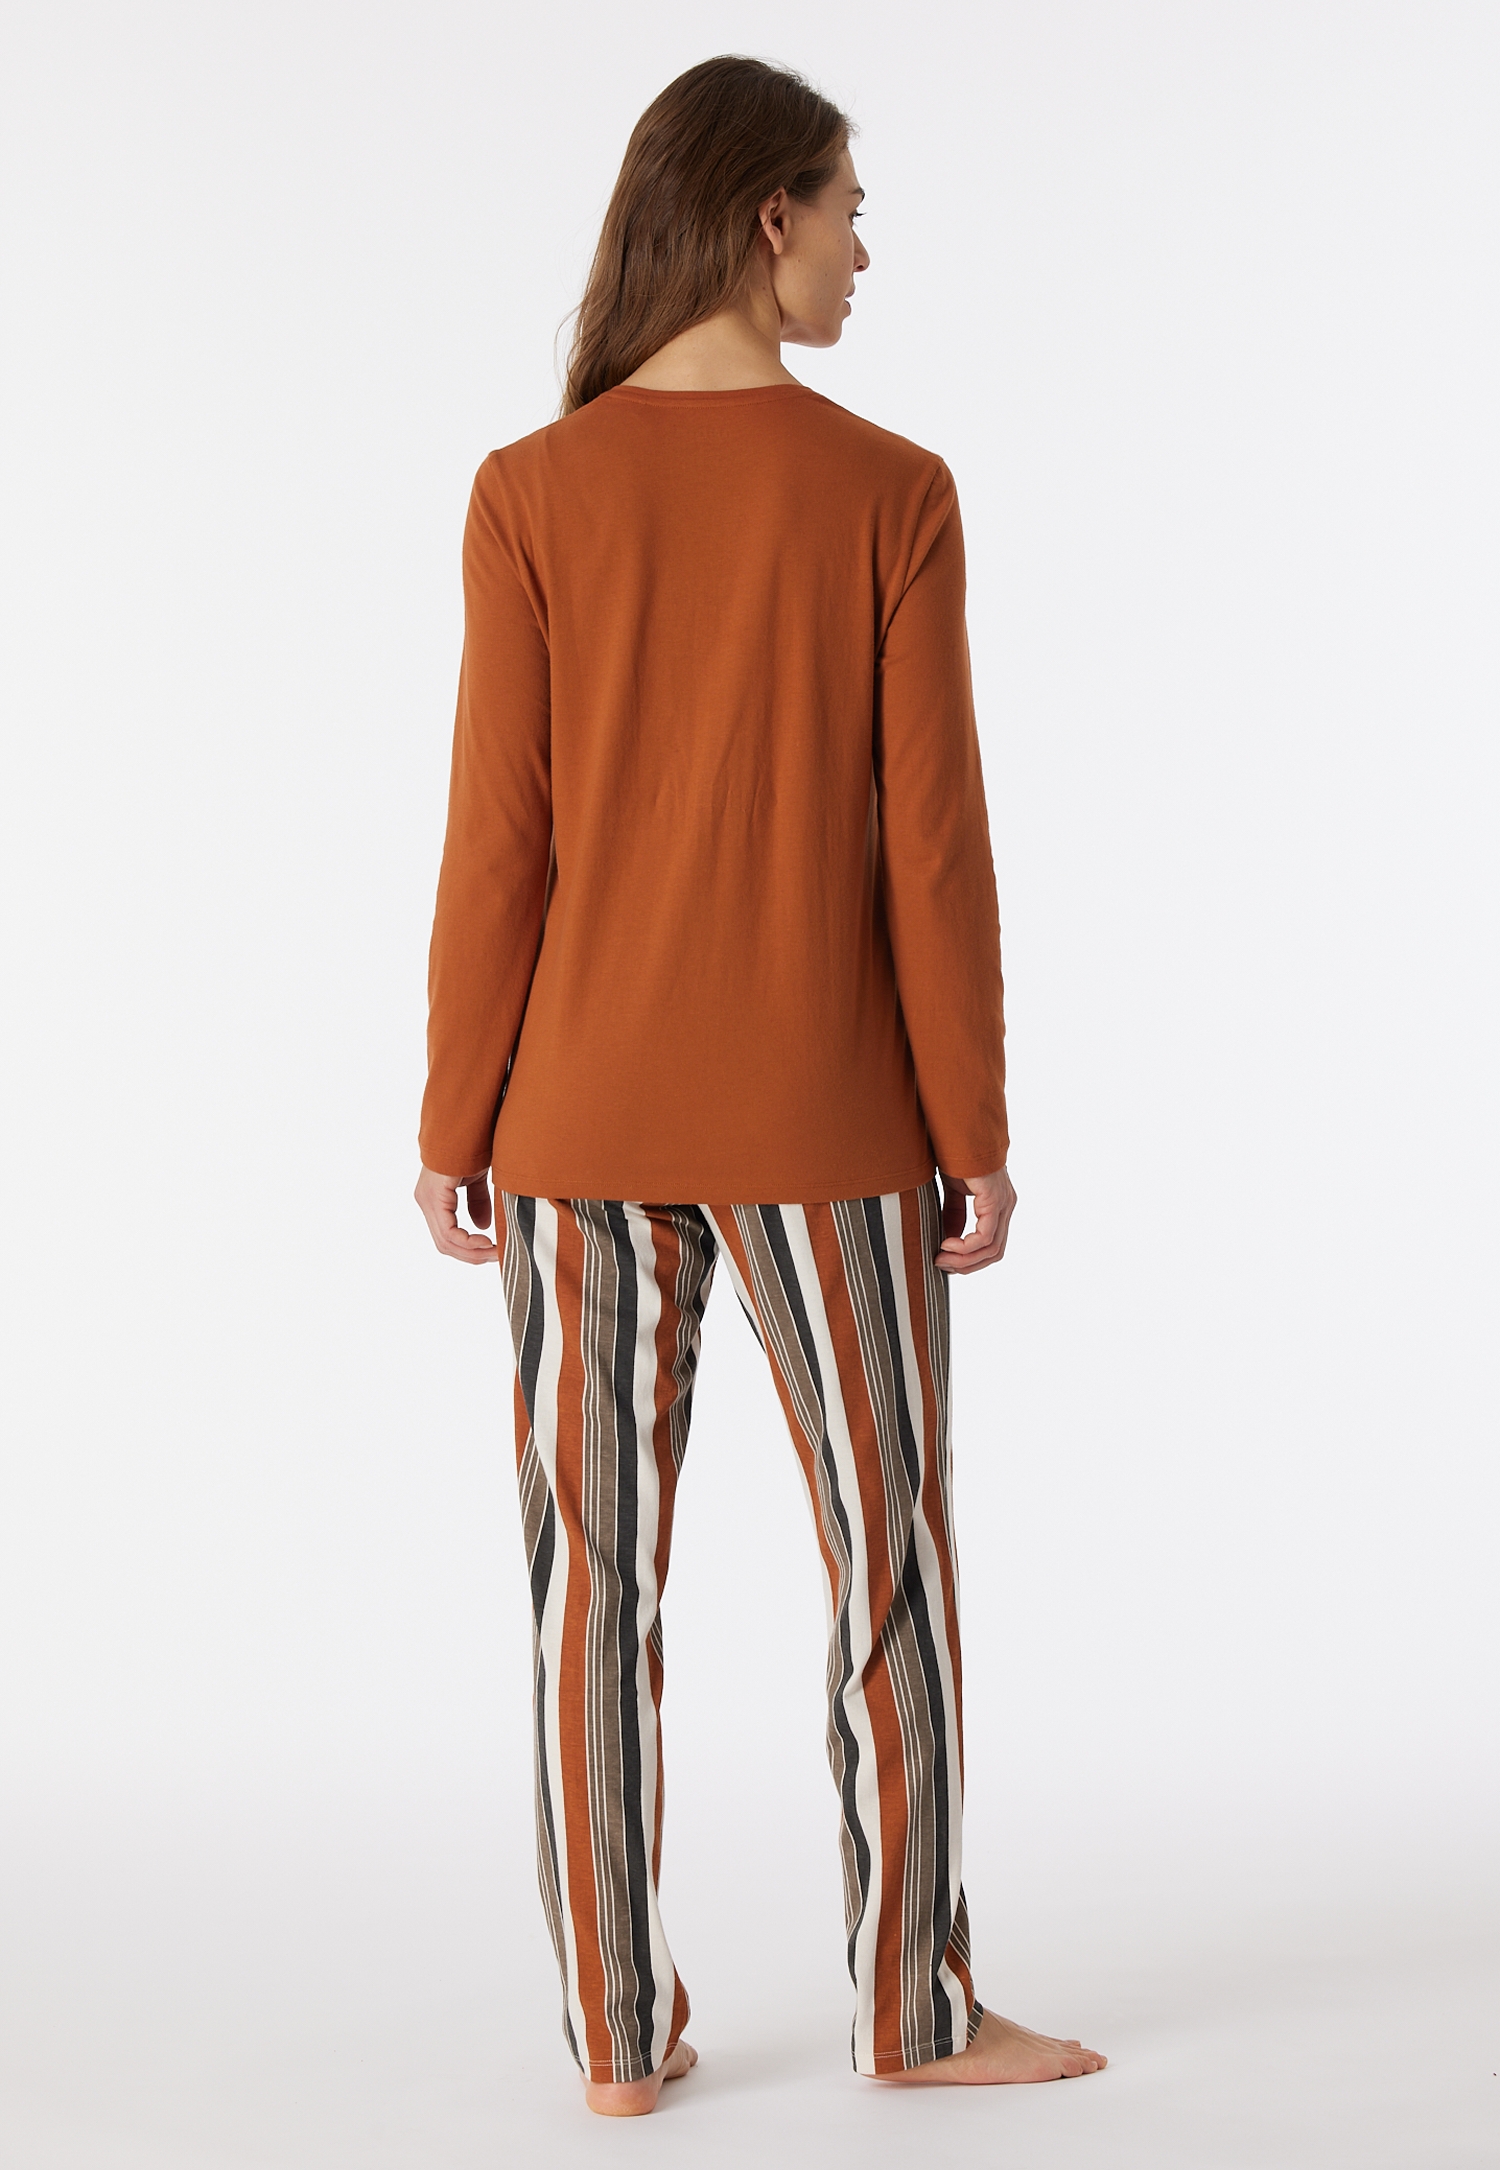 Damen-Schlafanzug mit gestreifter Hose aus Single-Jersey in 100 % Bio-Baumwollelang